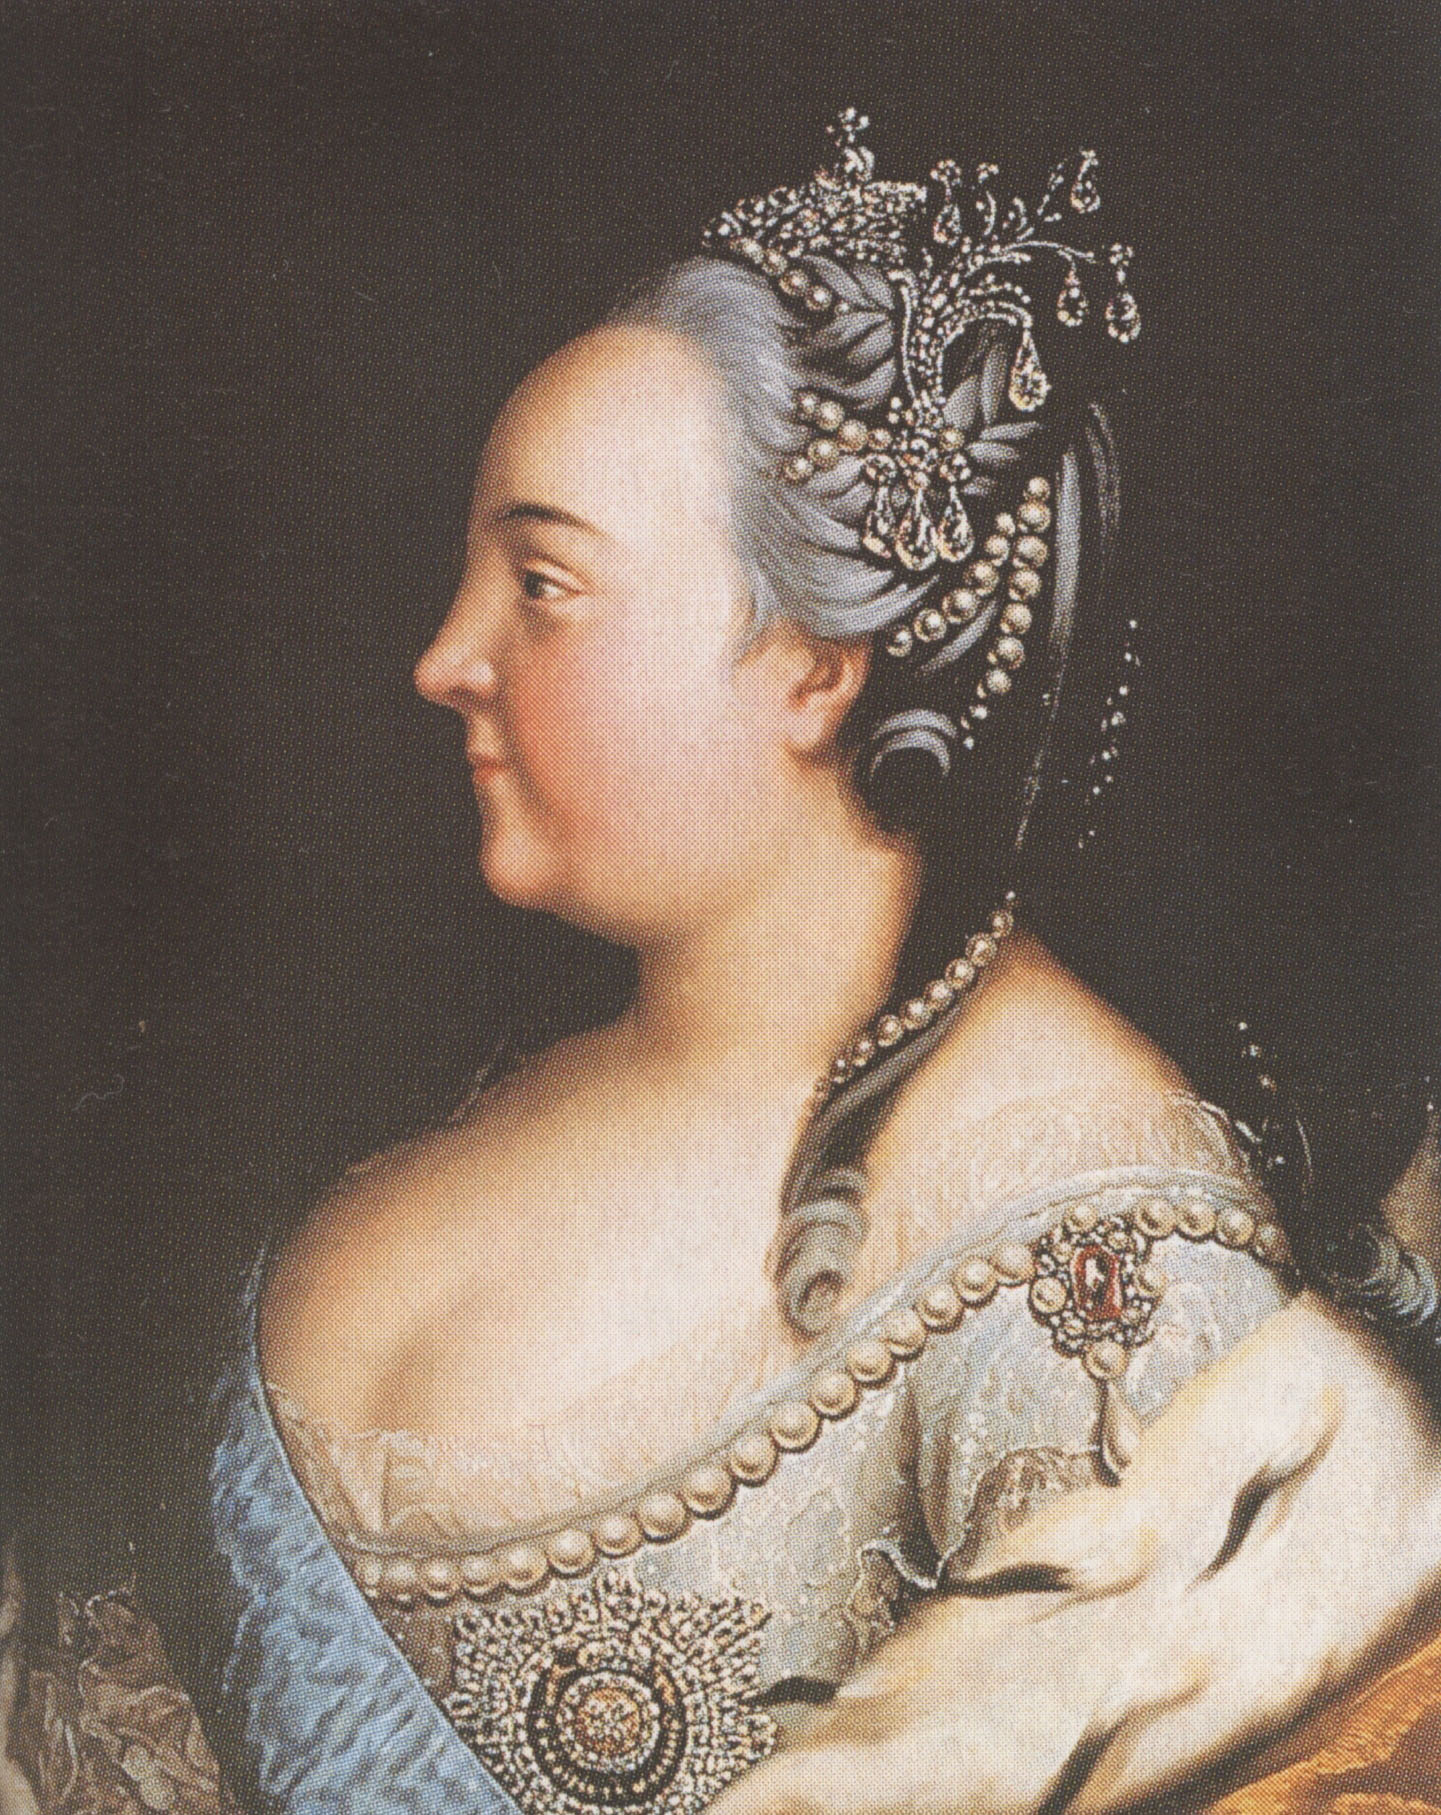 Г. Бухгольц. Елизавета Петровна в жемчугах. Около 1768.